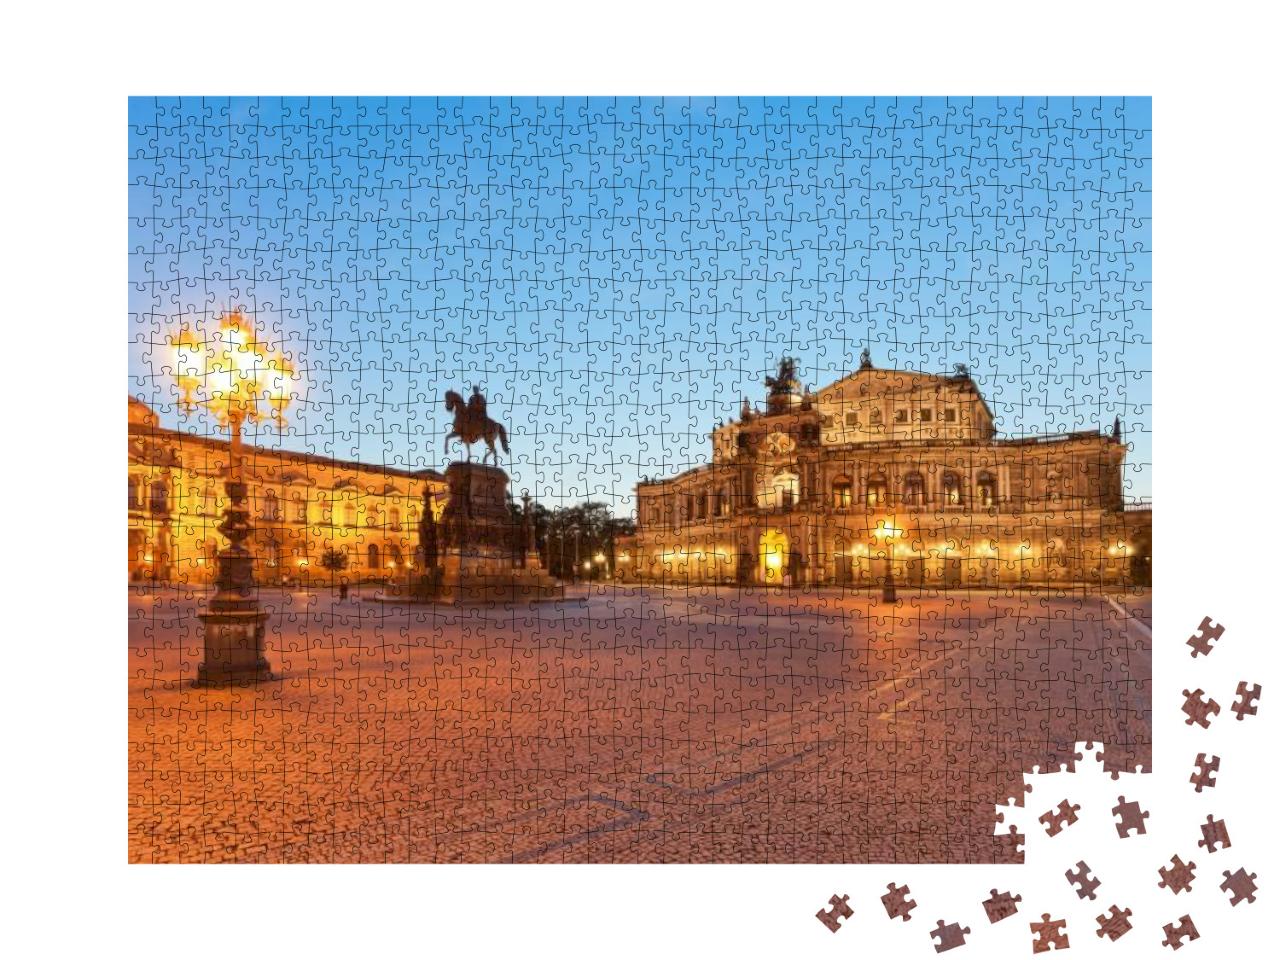 Puzzle 1000 Teile „Dresden: Semperoper in der Atmosphäre des Morgens“